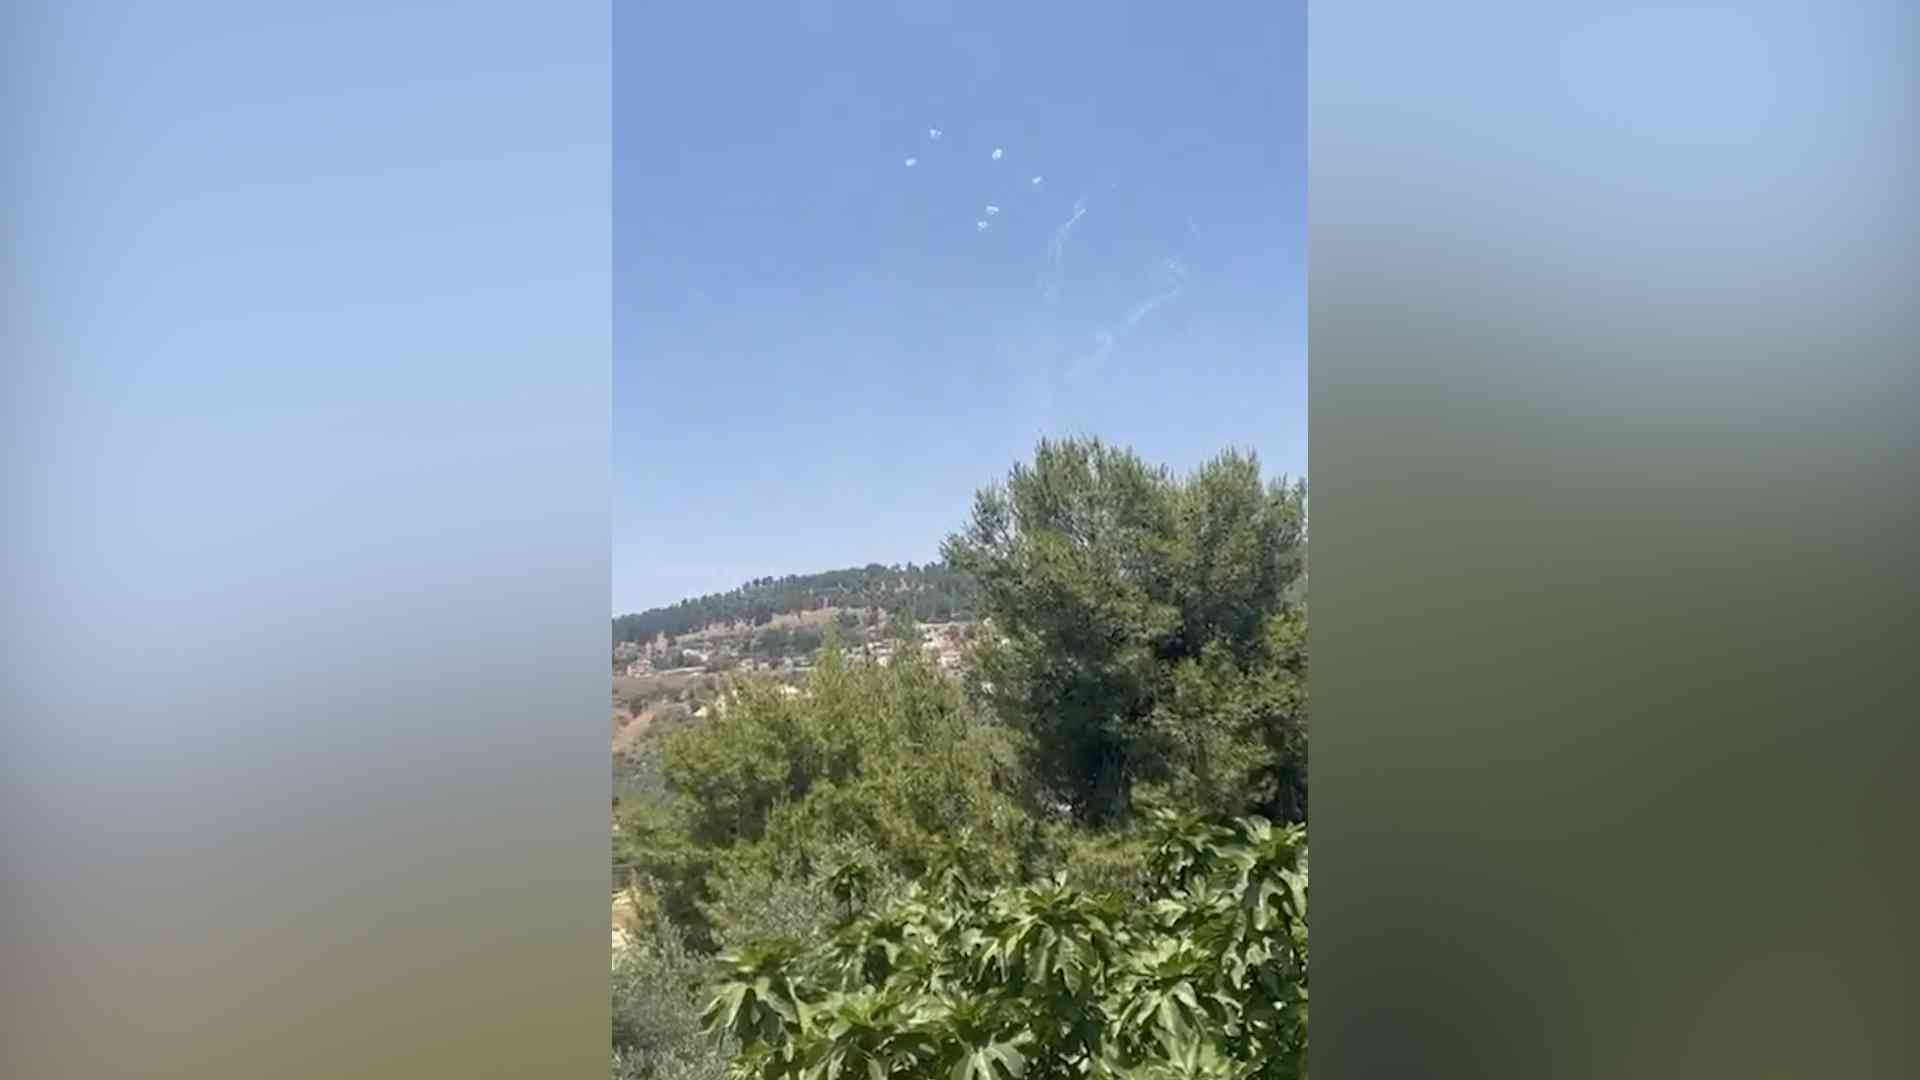 إصابة إسرائيليين بقذيفة أطلقت من جنوب لبنان (فيديو)